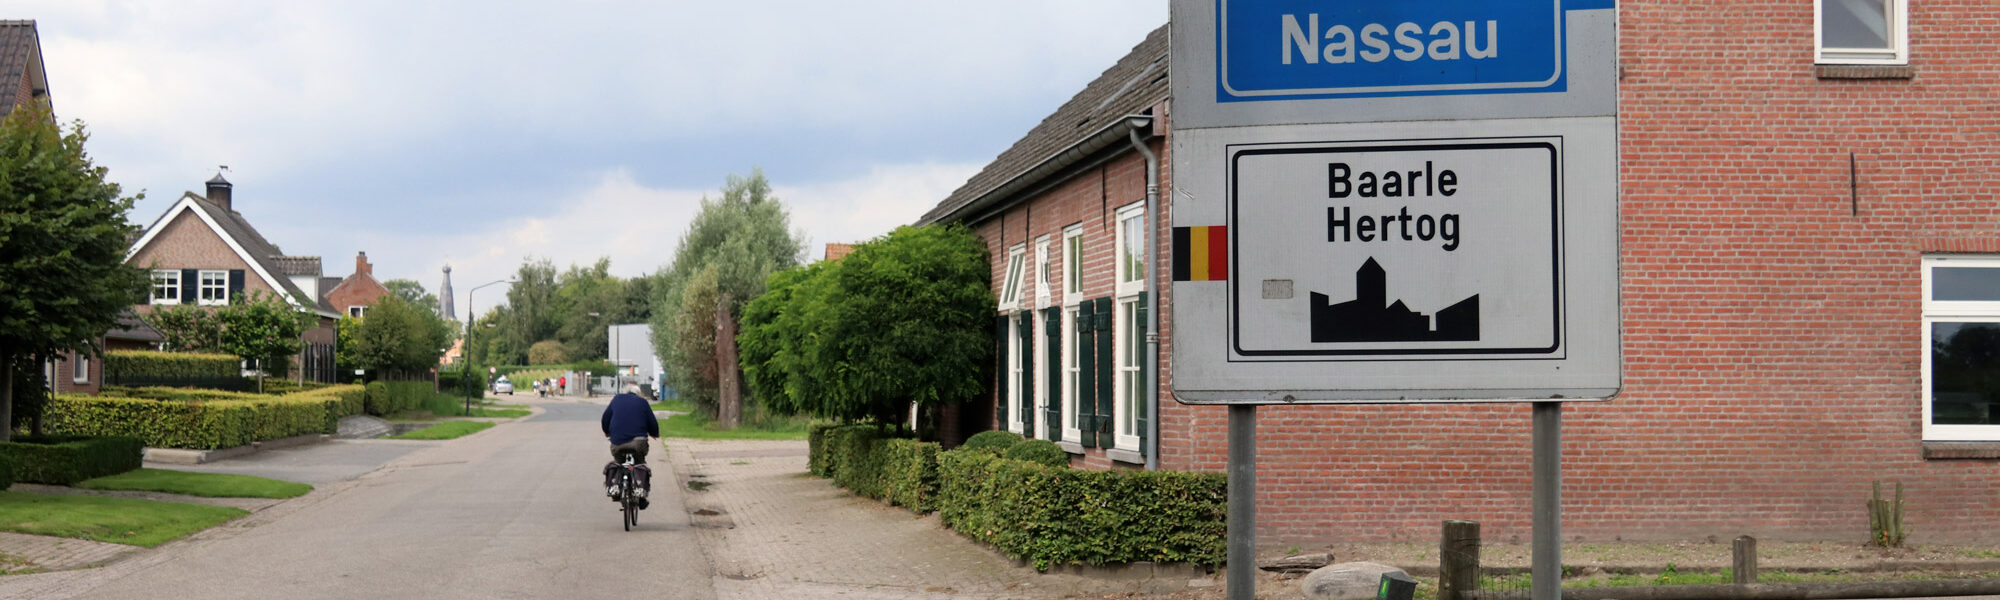 Een vreemd Nederlands/Belgisch dorp: Baarle - De borden bij binnenkomst